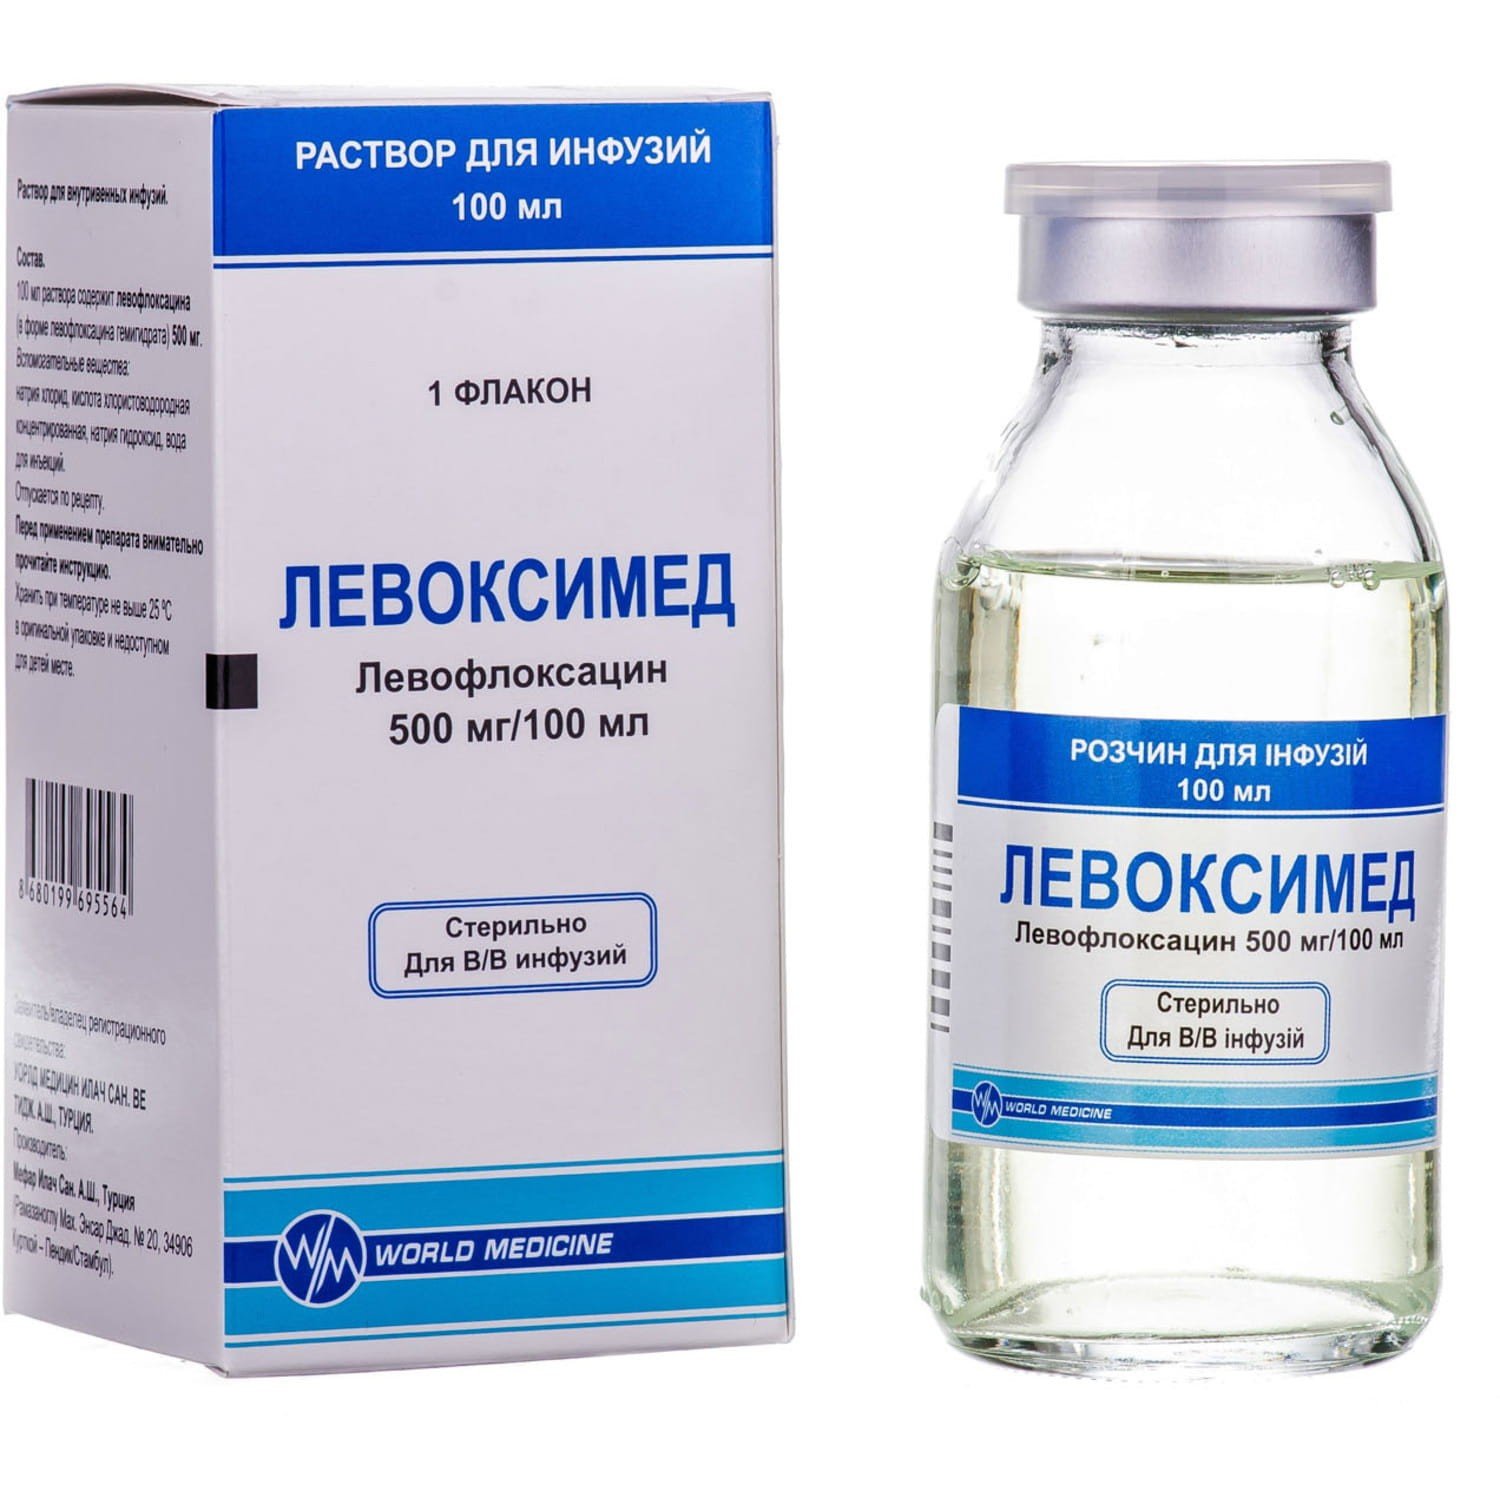 Левоксимед розчин для інфузій, 500 мг/100 мл, 100 мл: інструкція, ціна .